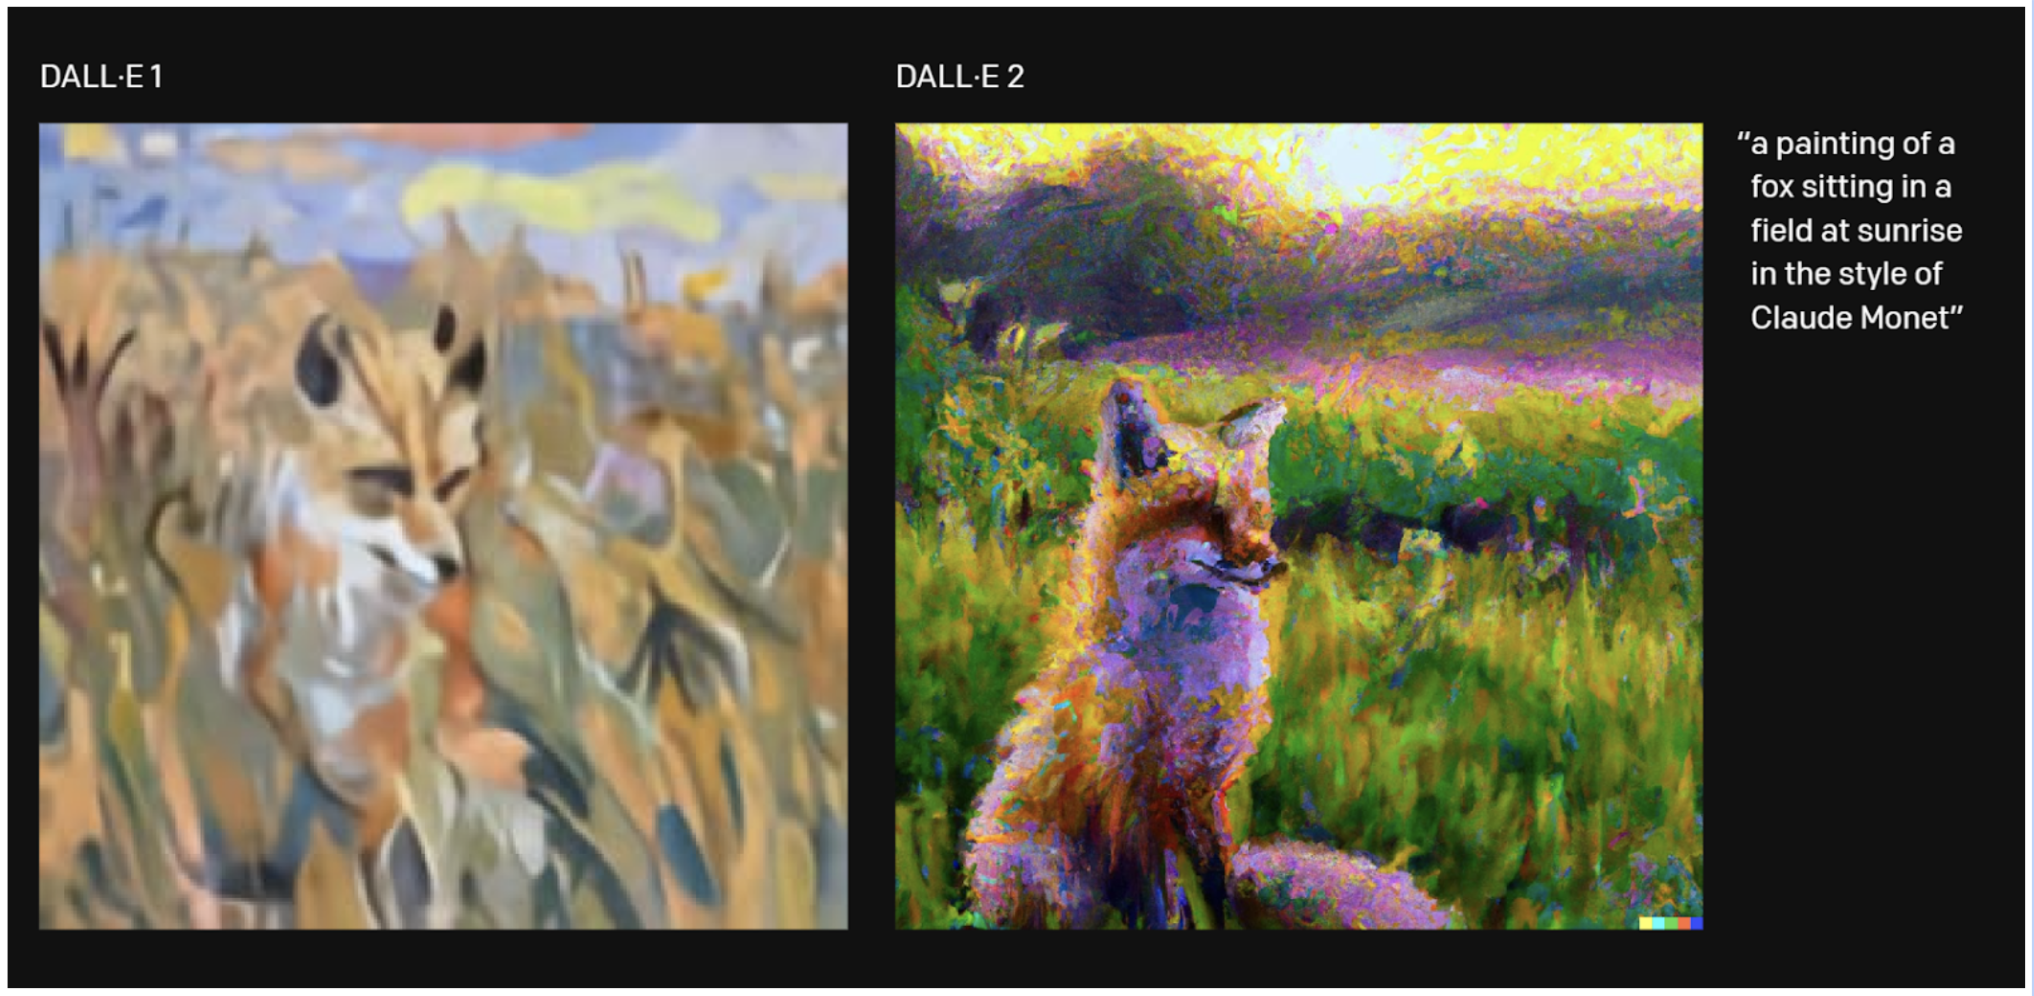 DALL-E - một thuật toán giúp tạo ra hình ảnh con chó hoàn hảo đến từ hãng công nghệ Open AI. Hãy xem hình ảnh và khám phá thêm về ứng dụng này nhé!